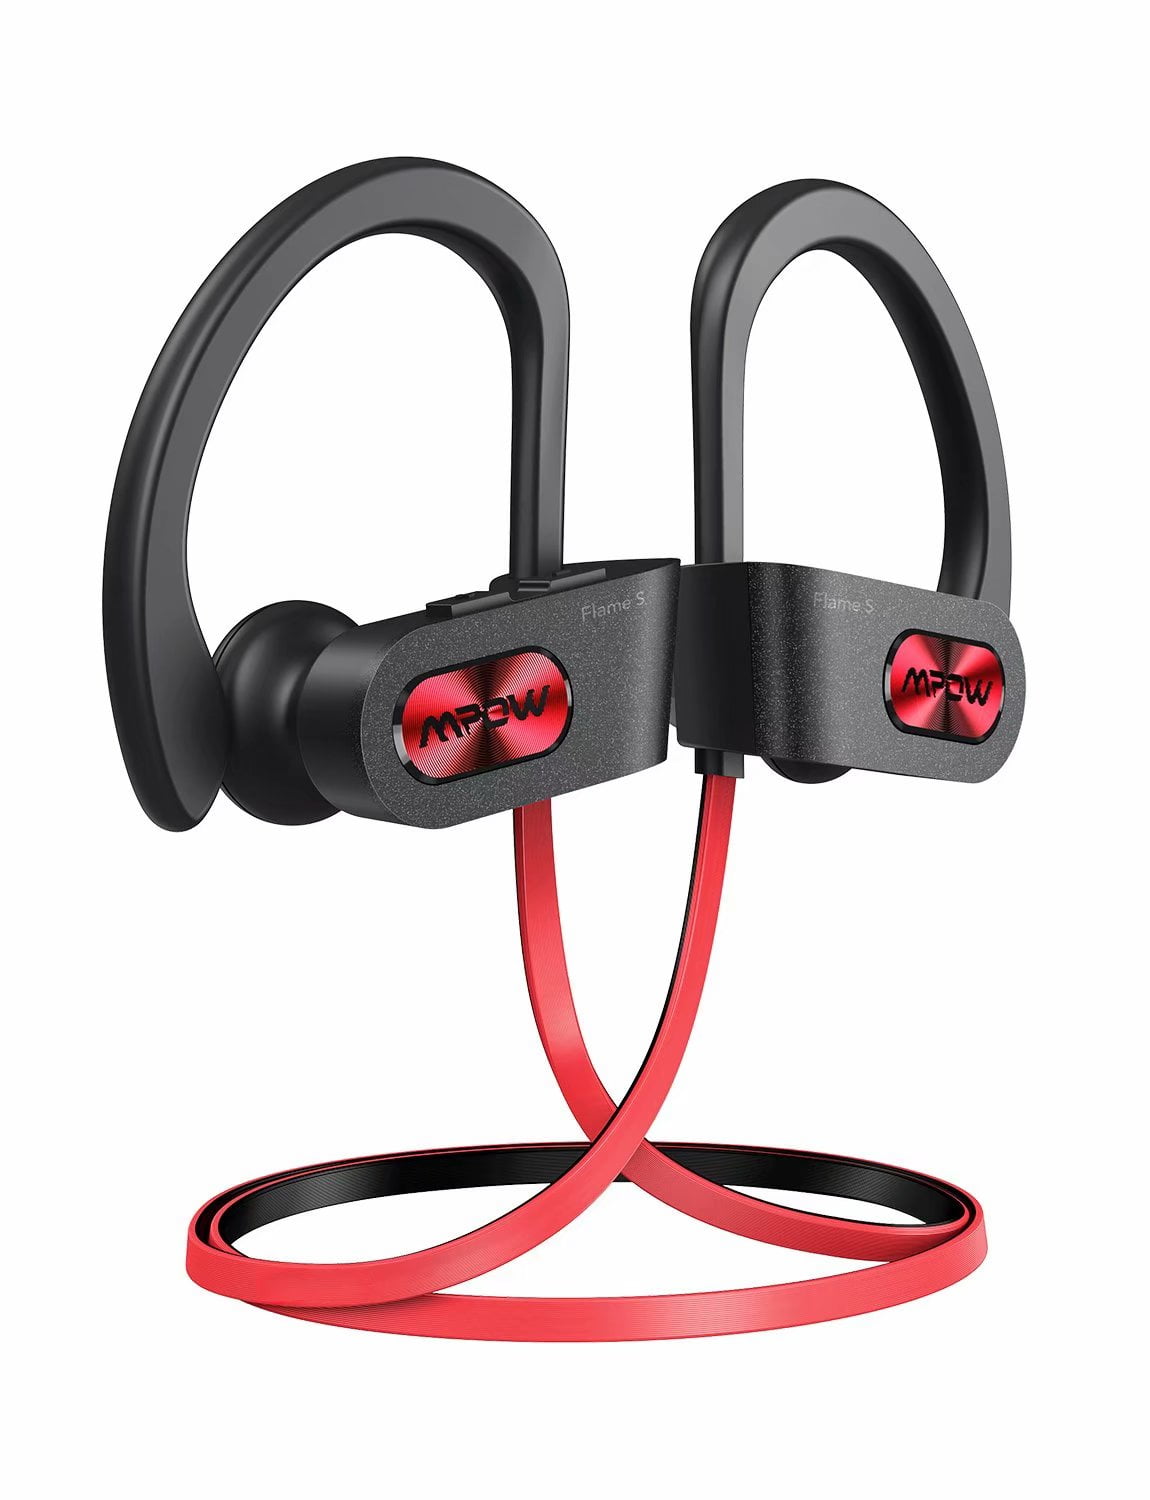 Sportkopfhörer Joggen/Laufen Bluetooth 4.1 In Ear Kopfhörer mit Mikrofon für iPhone Android 7-10 Stunden Spielzeit/Bass+ Technologie Mpow Flame Bluetooth Kopfhörer IPX7 Wasserdicht Kopfhörer Sport 